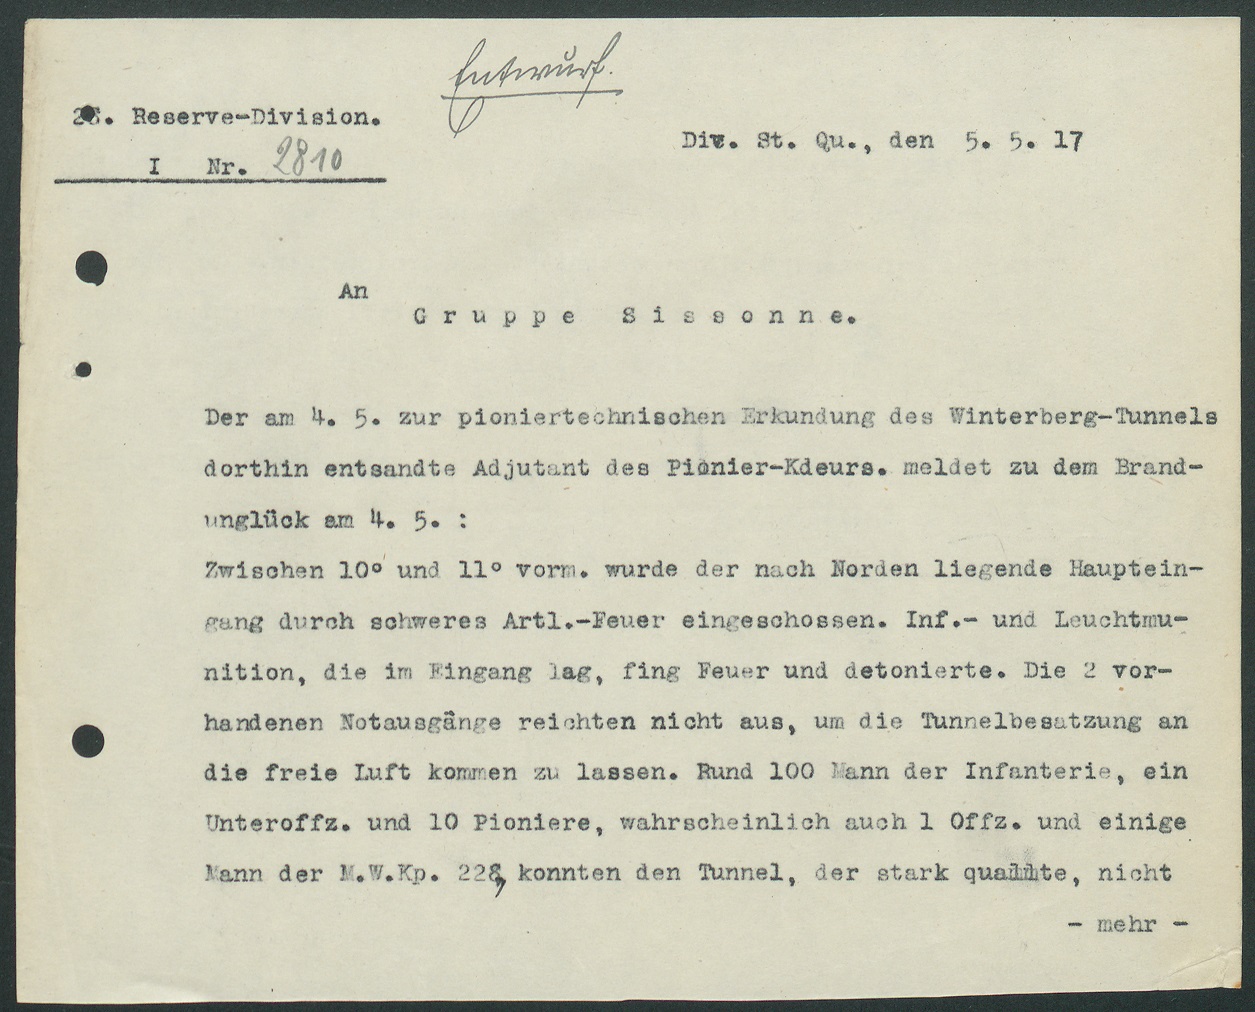 Message de la 28e divison de réserve au Groupe de Sissone le 5 mai 1917